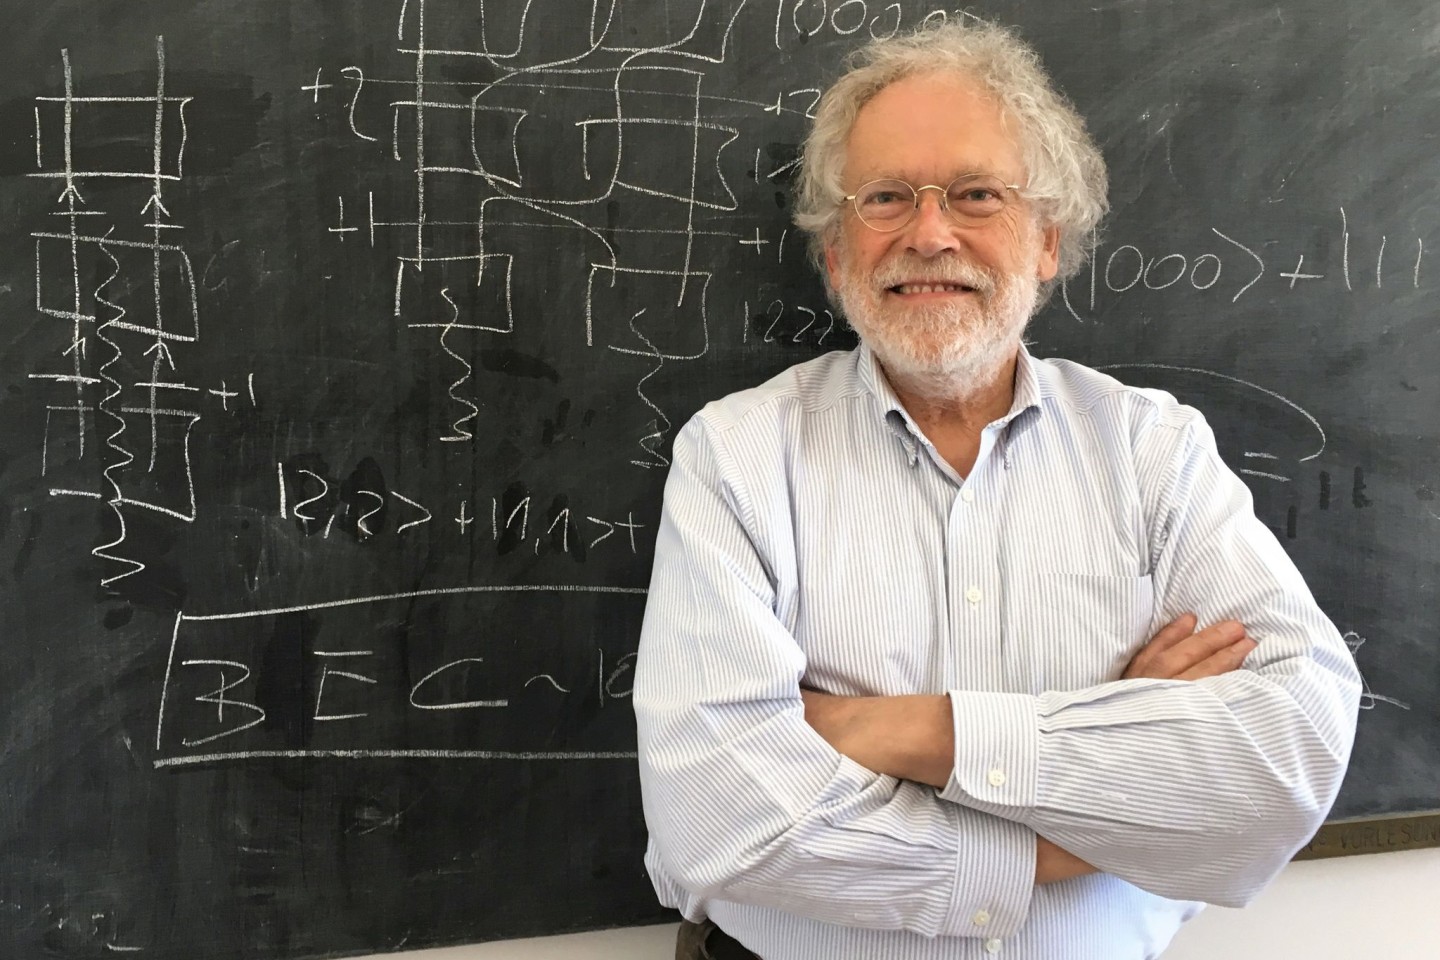 Der österreichische Quantenphysiker Anton Zeilinger wird zusammen mit zwei weiteren Forschern mit dem Nobelpreis für Physik ausgezeichnet.